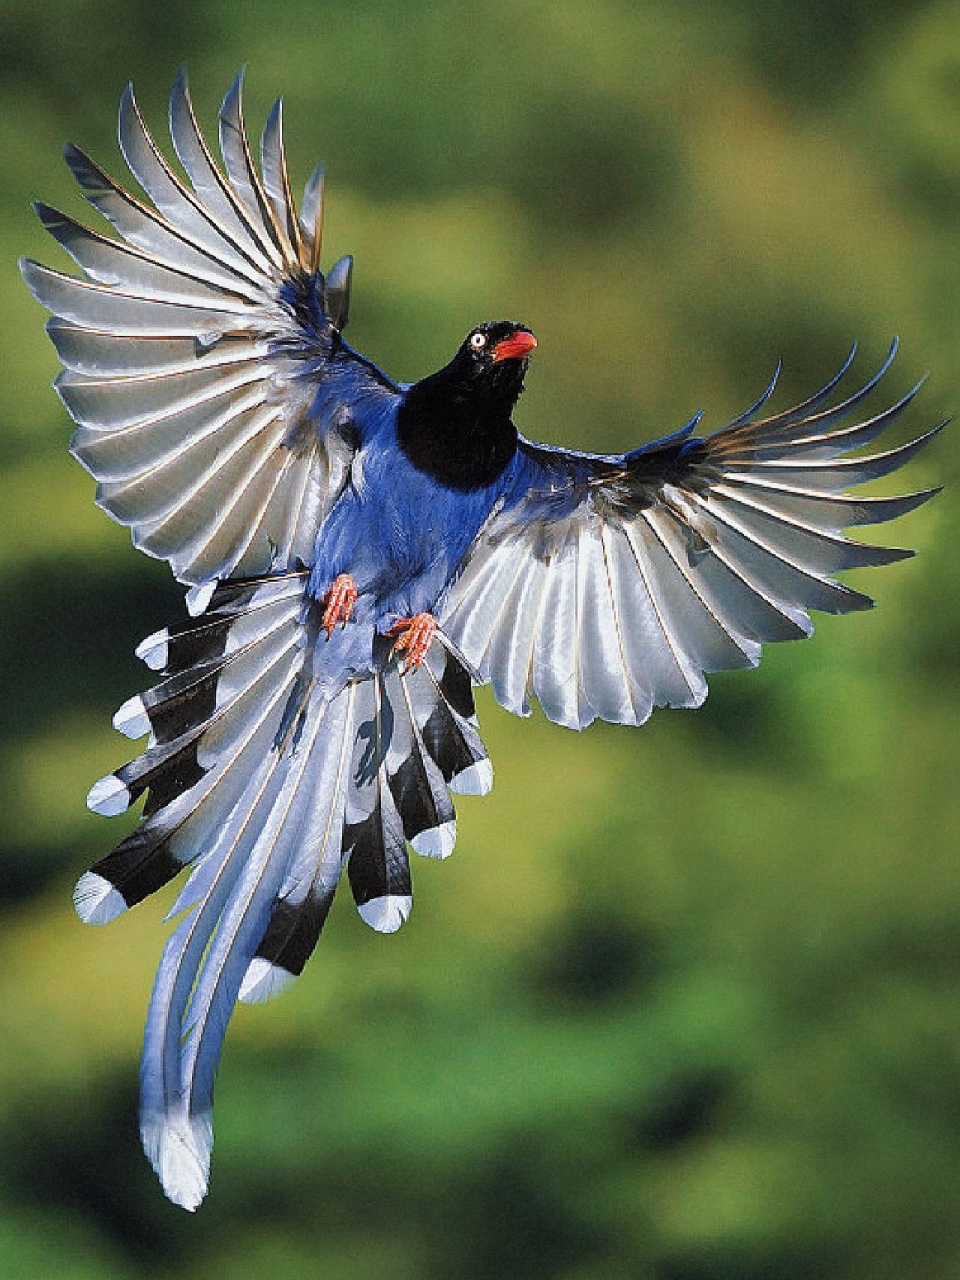 台湾蓝鹊,又叫长尾山娘,是一种体型较大的深蓝色鸟类